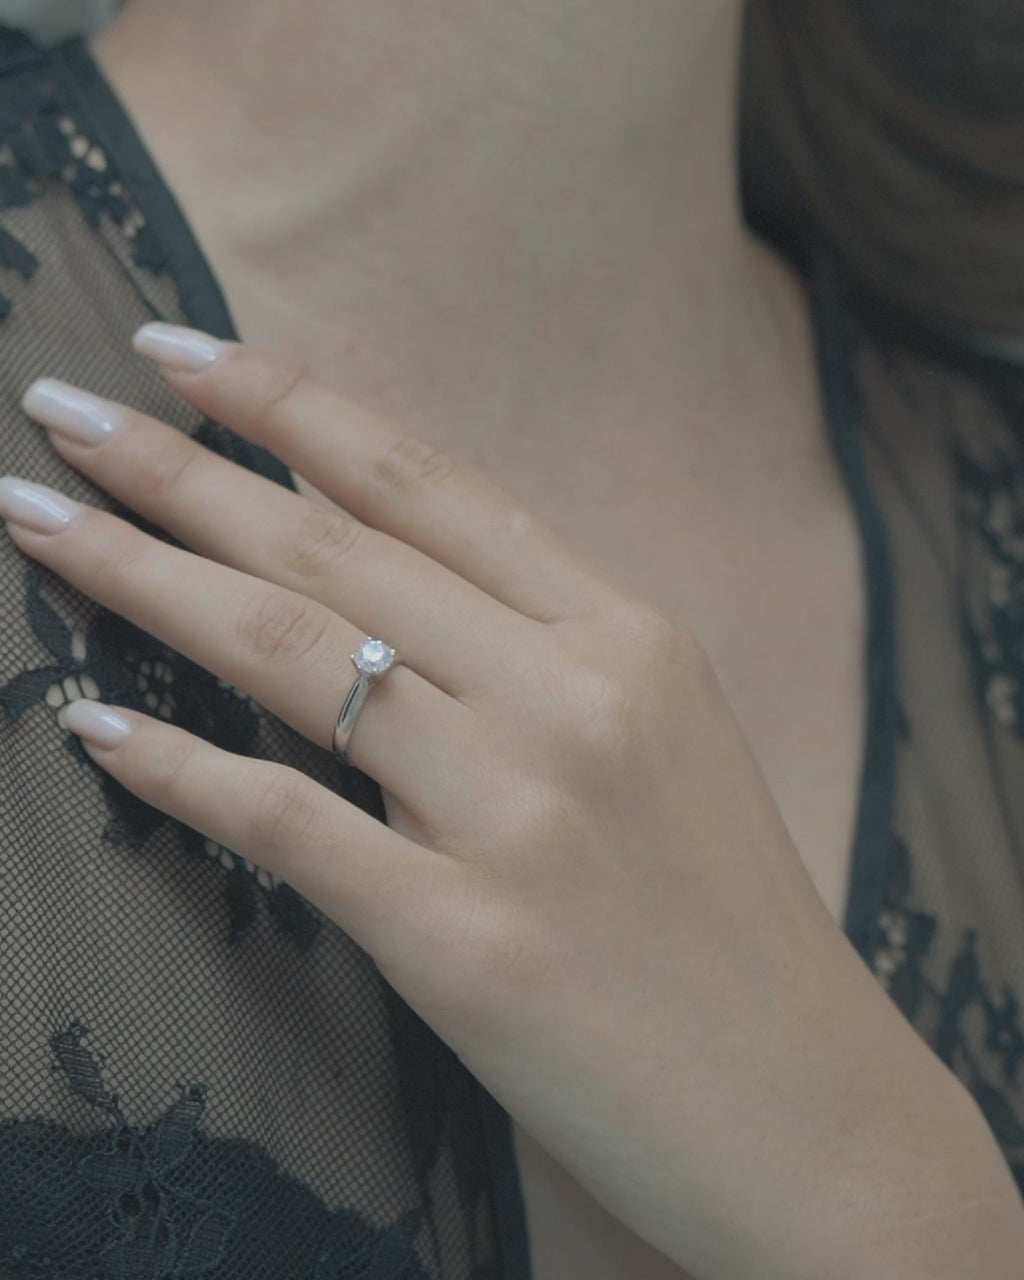 Λευκόχρυσο μονόπετρο δαχτυλίδι με διαμάντι φορεμένο σε γυναικείο χέρι.